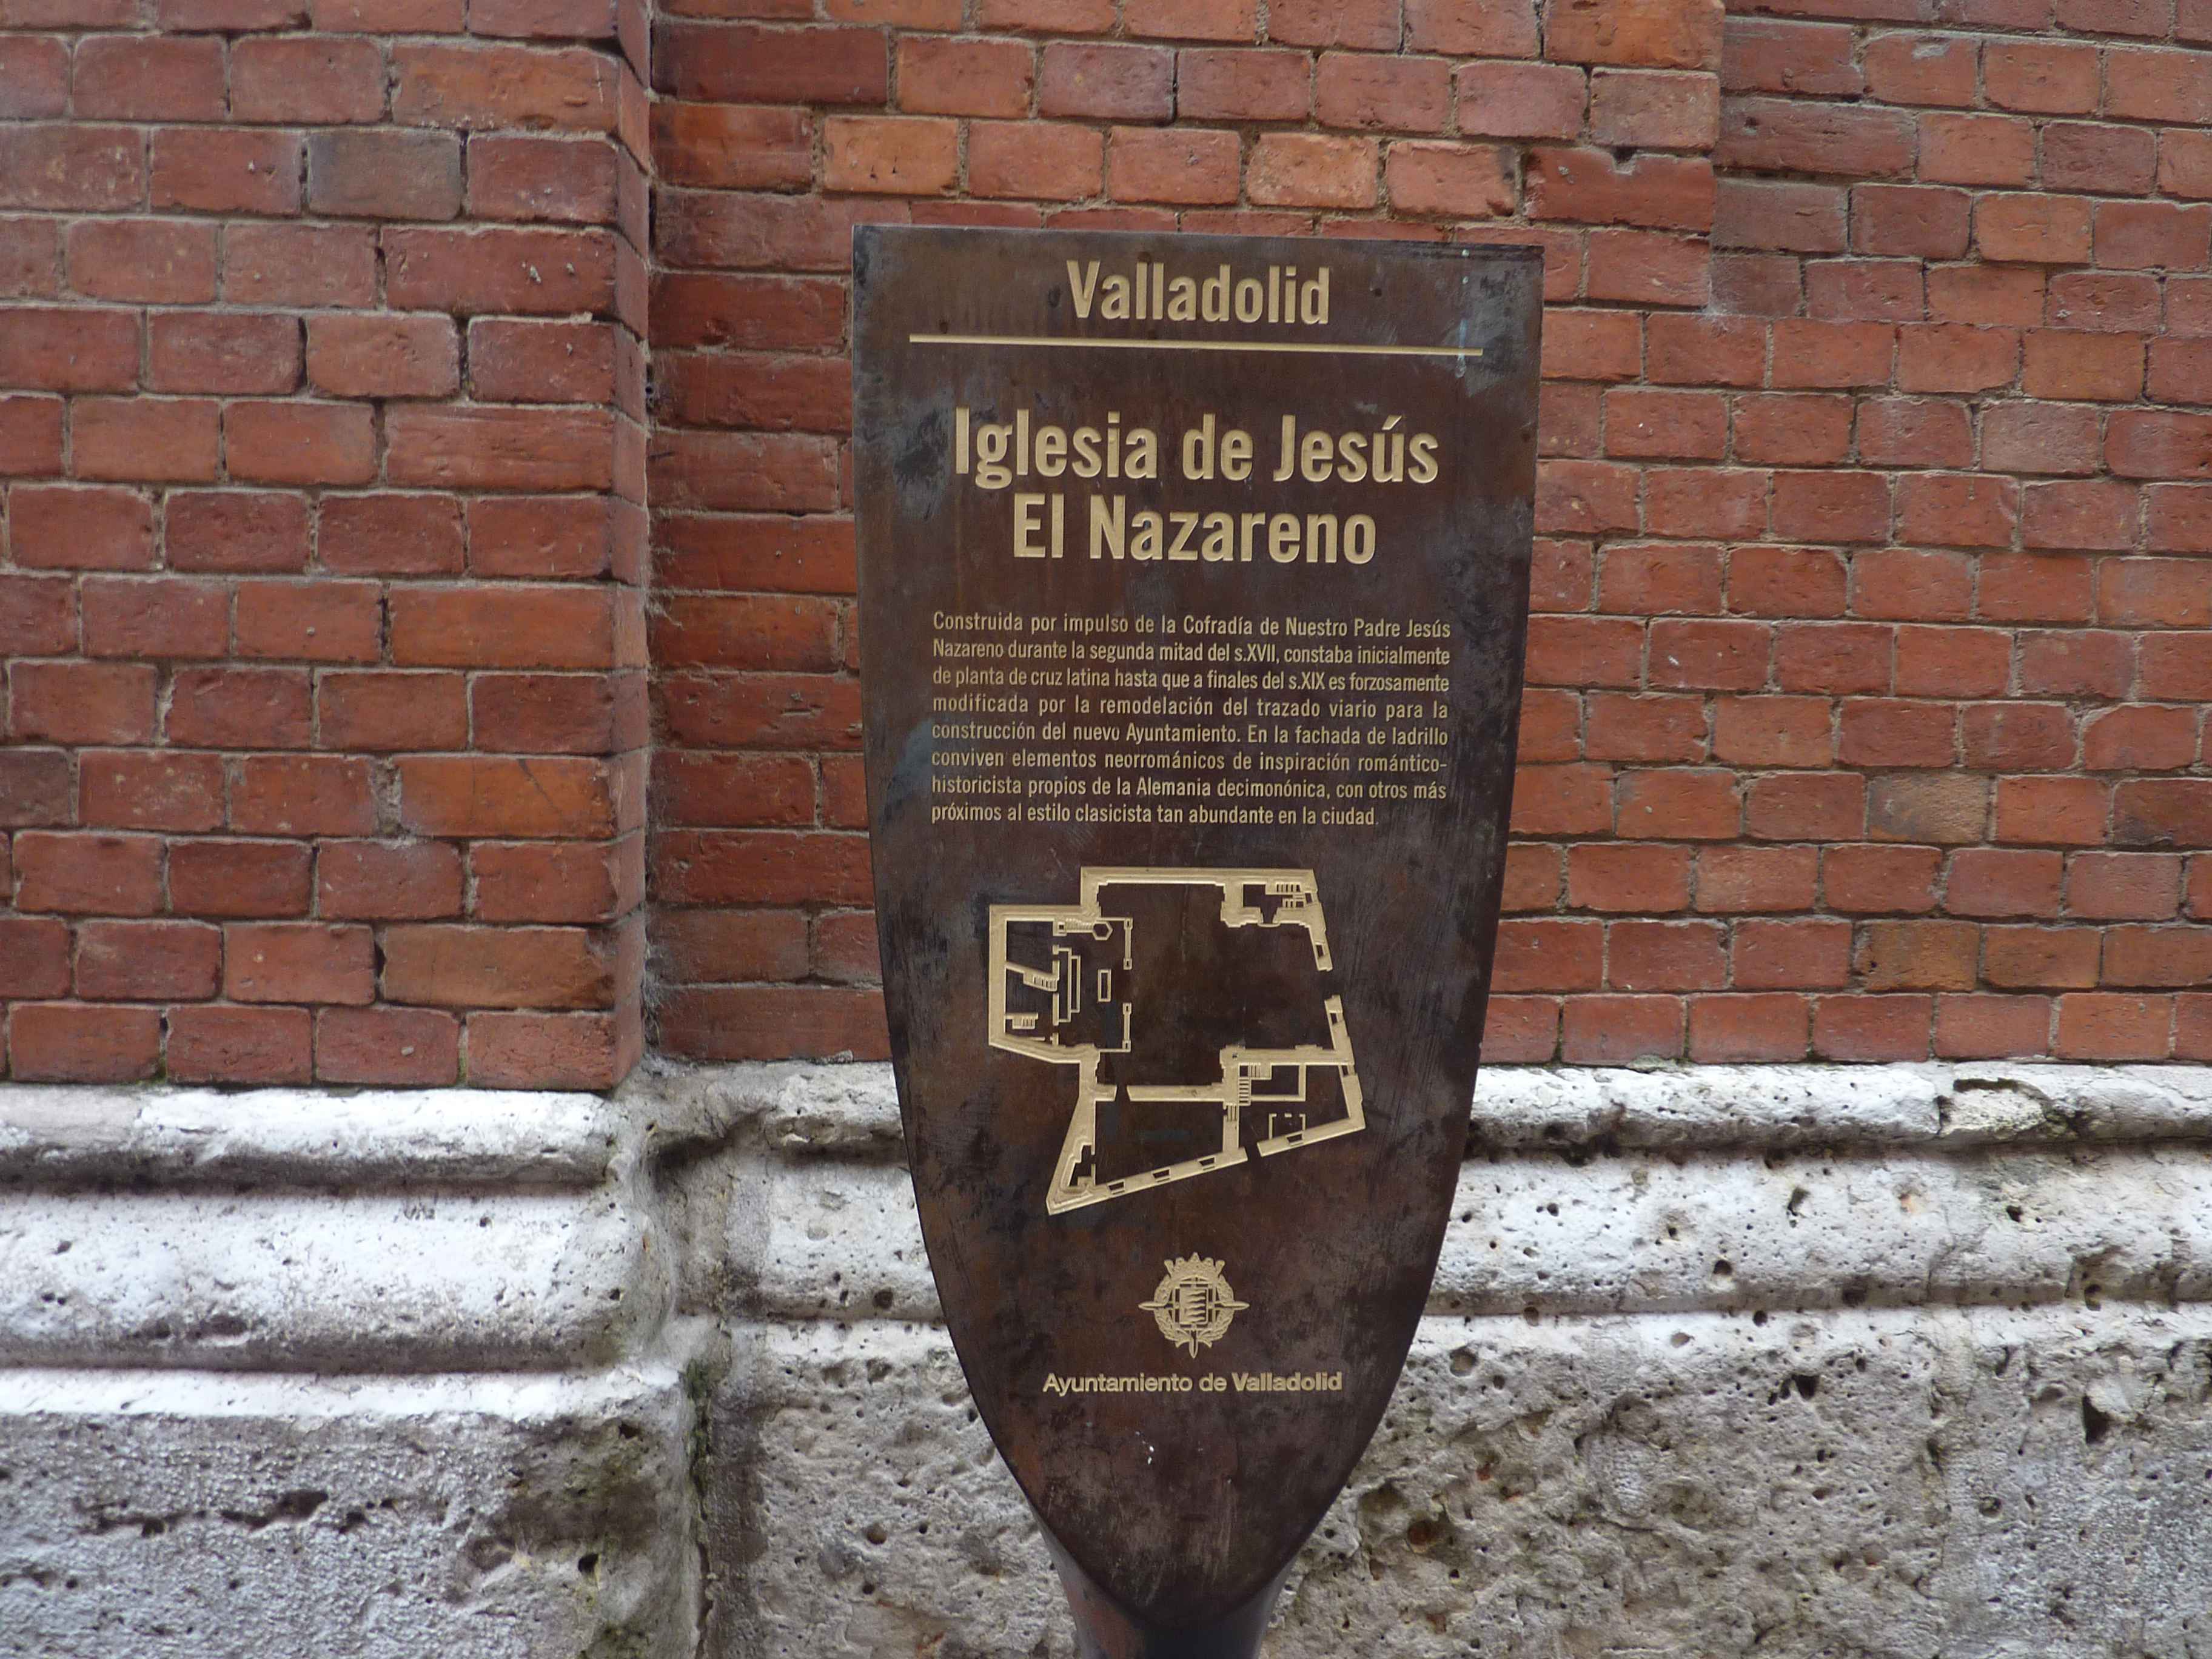 Des Panneaux Explicatifs Bien Fait A Valladolid en Images